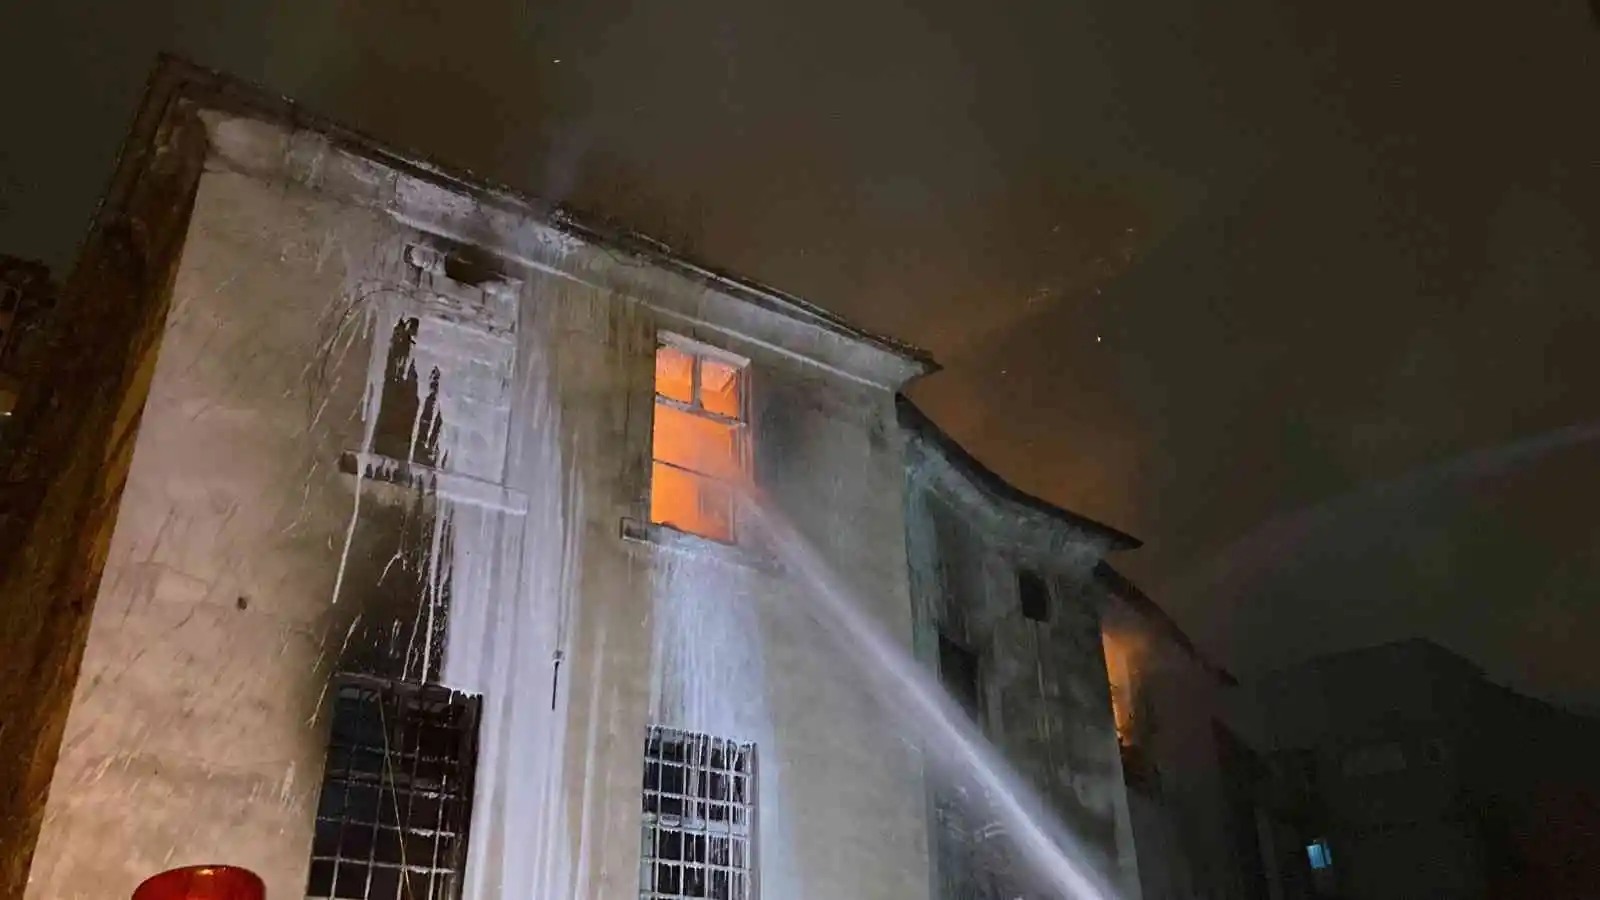 Beyoğlu’nda Ermeni Kilisesi’ndeki yangında ölü sayısı 2’ye çıktı
